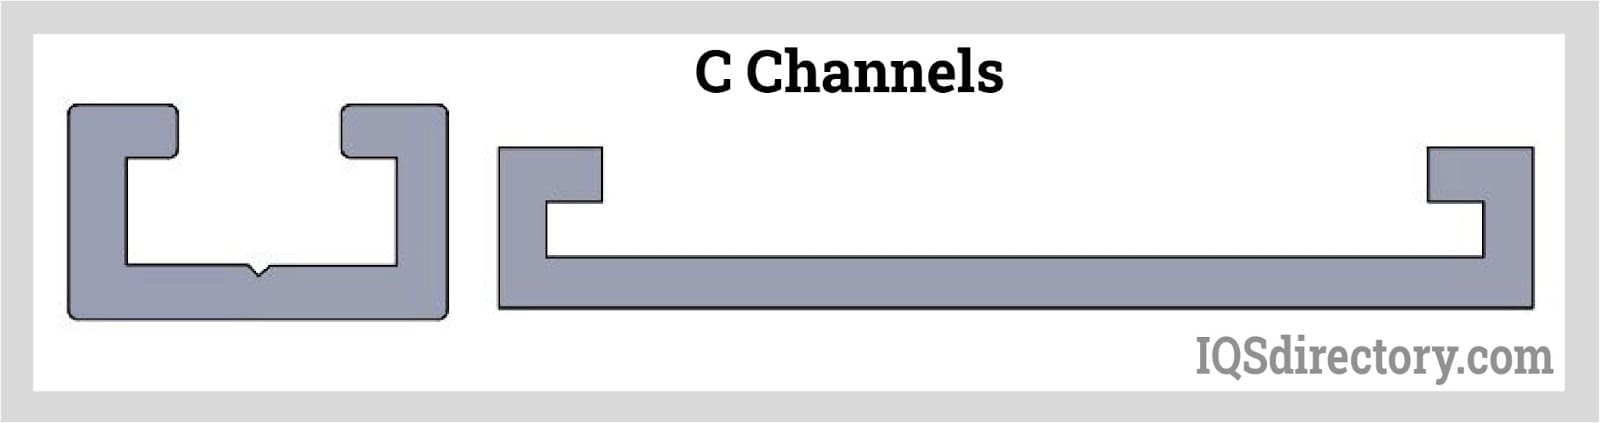 C Channels